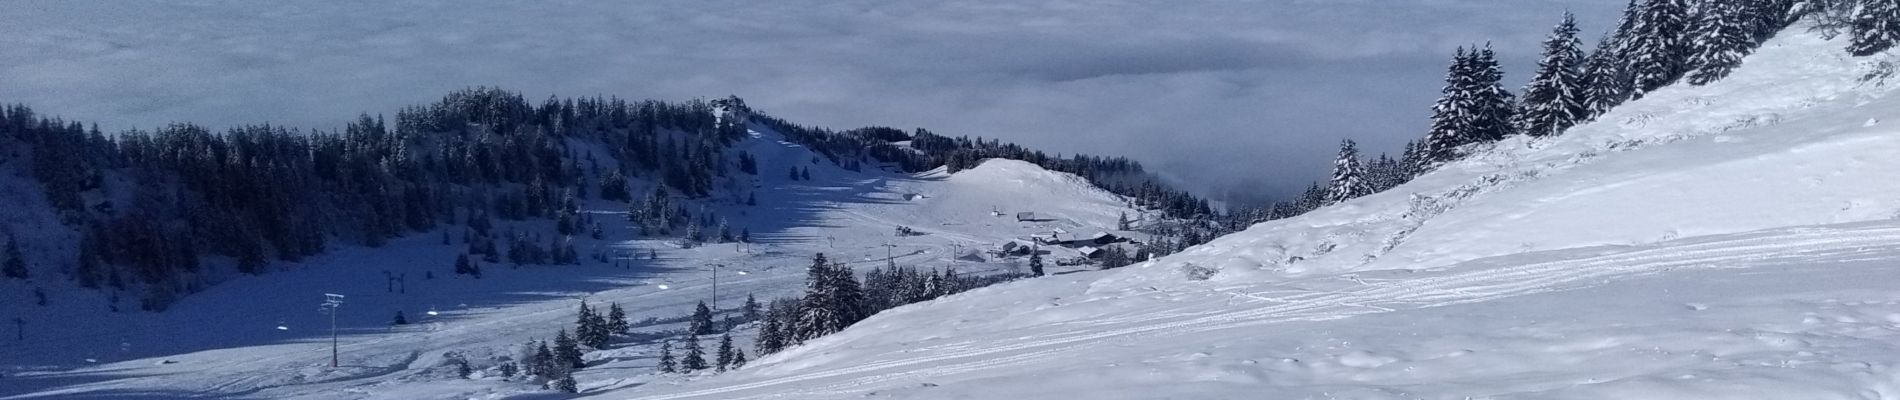 Randonnée Ski de randonnée Allevard - tricotage crête des Plagnes - Photo